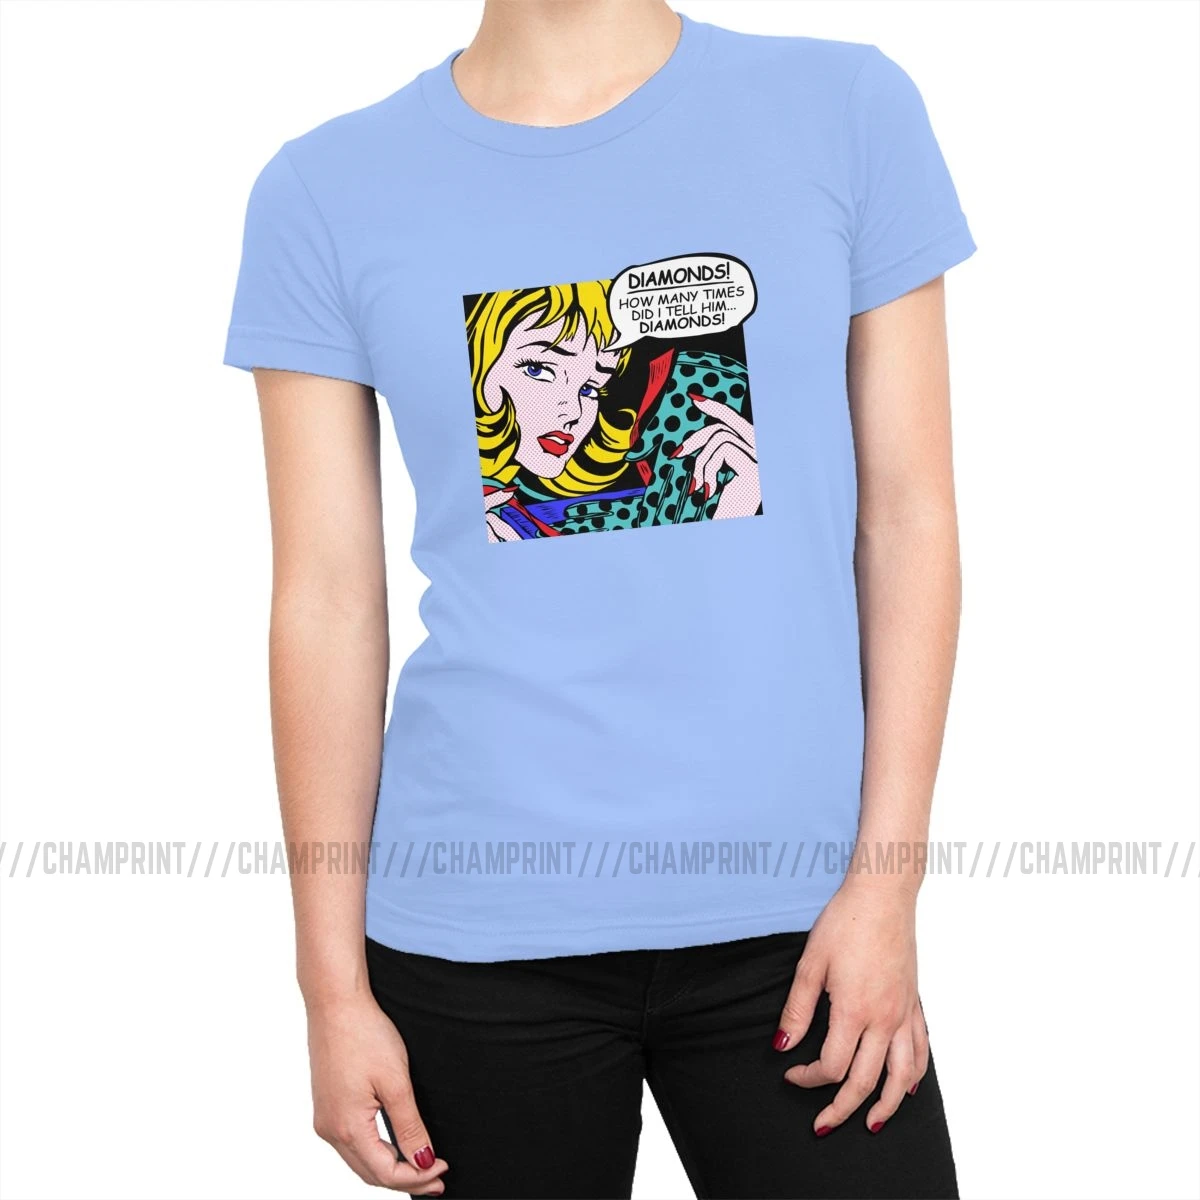 Roy Lichtenstein комическое искусство девушка с перчатками футболки женские корейский стиль поп-арт футболка футболки tumblr топы Женская одежда - Цвет: Небесно-голубой